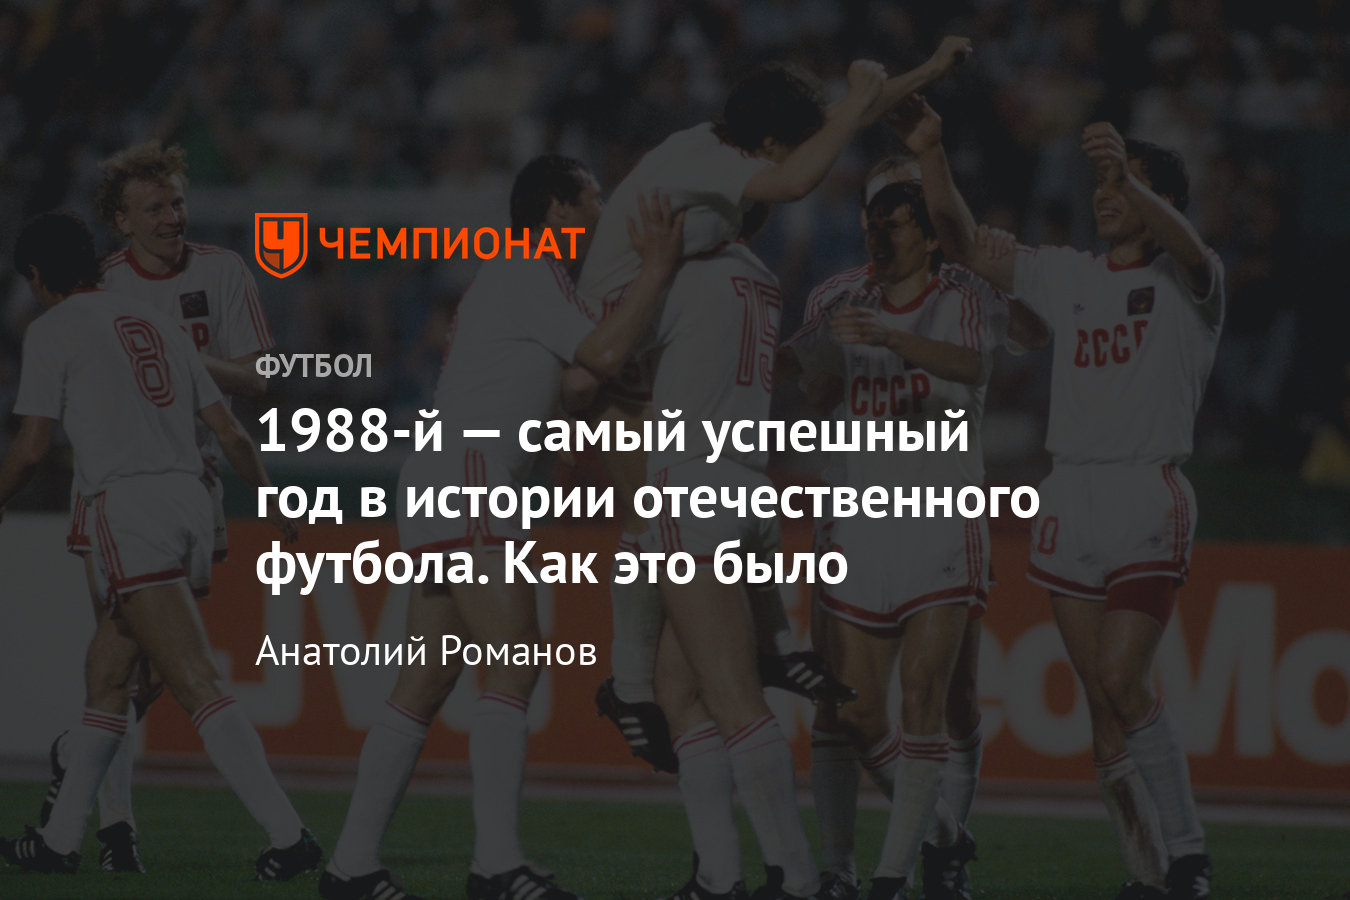 1988-й год – лучший в истории нашего футбола, хронология, видео, фото -  Чемпионат